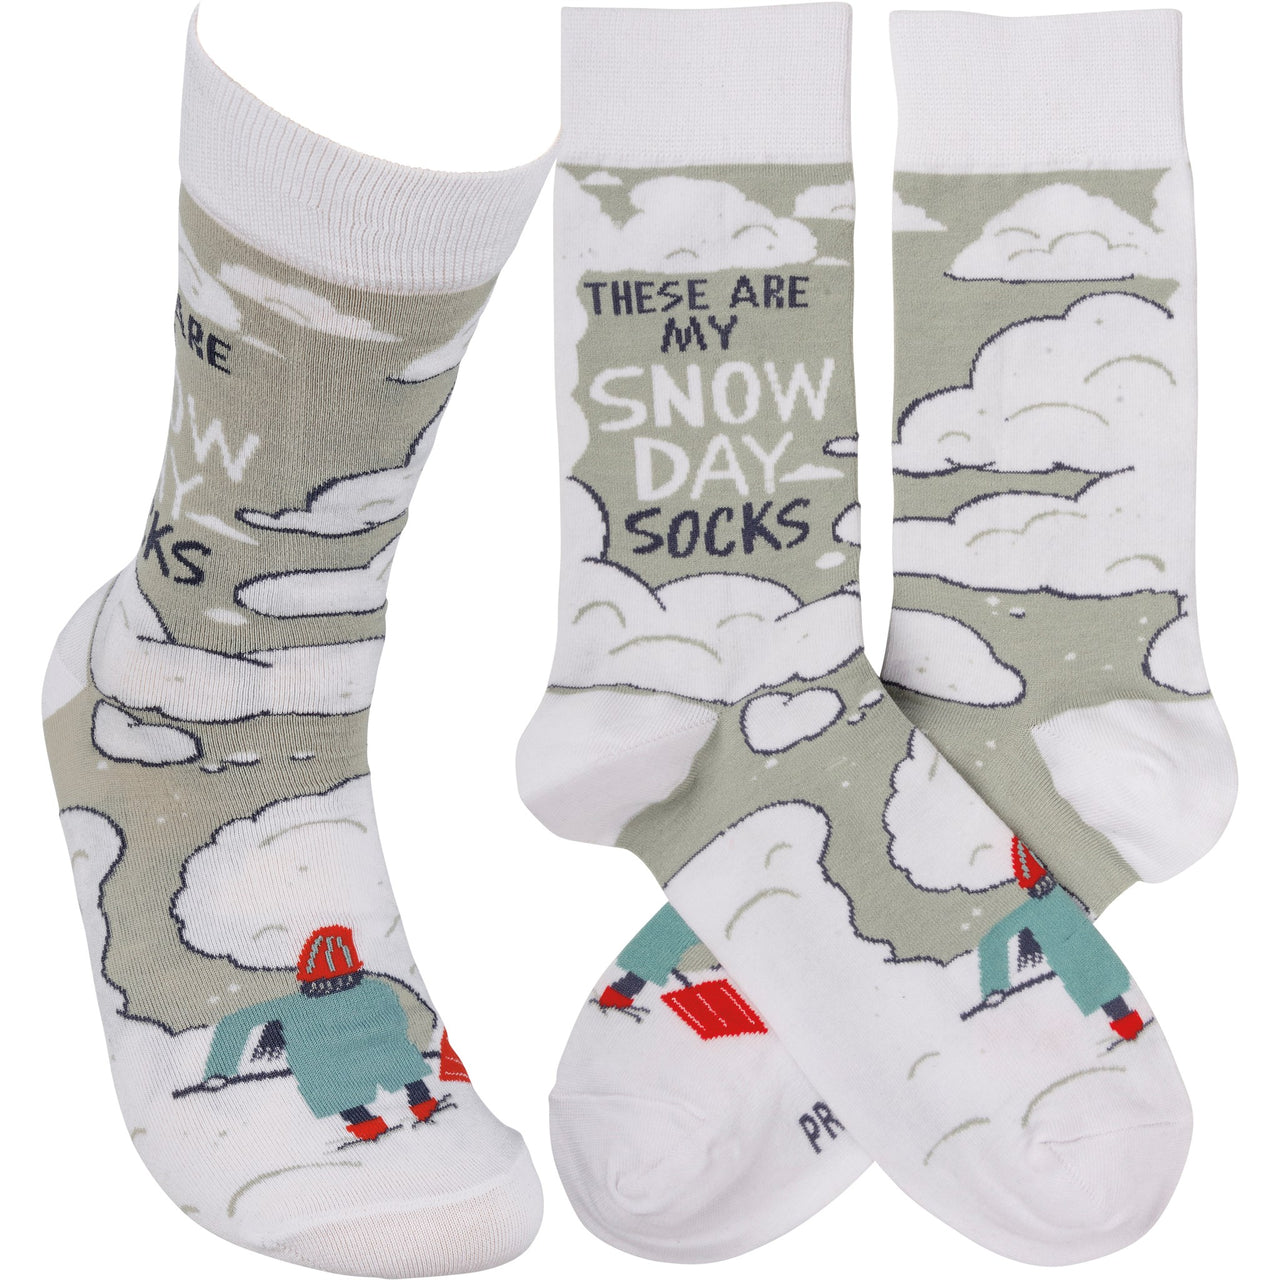 Socks - Snow Day Socks